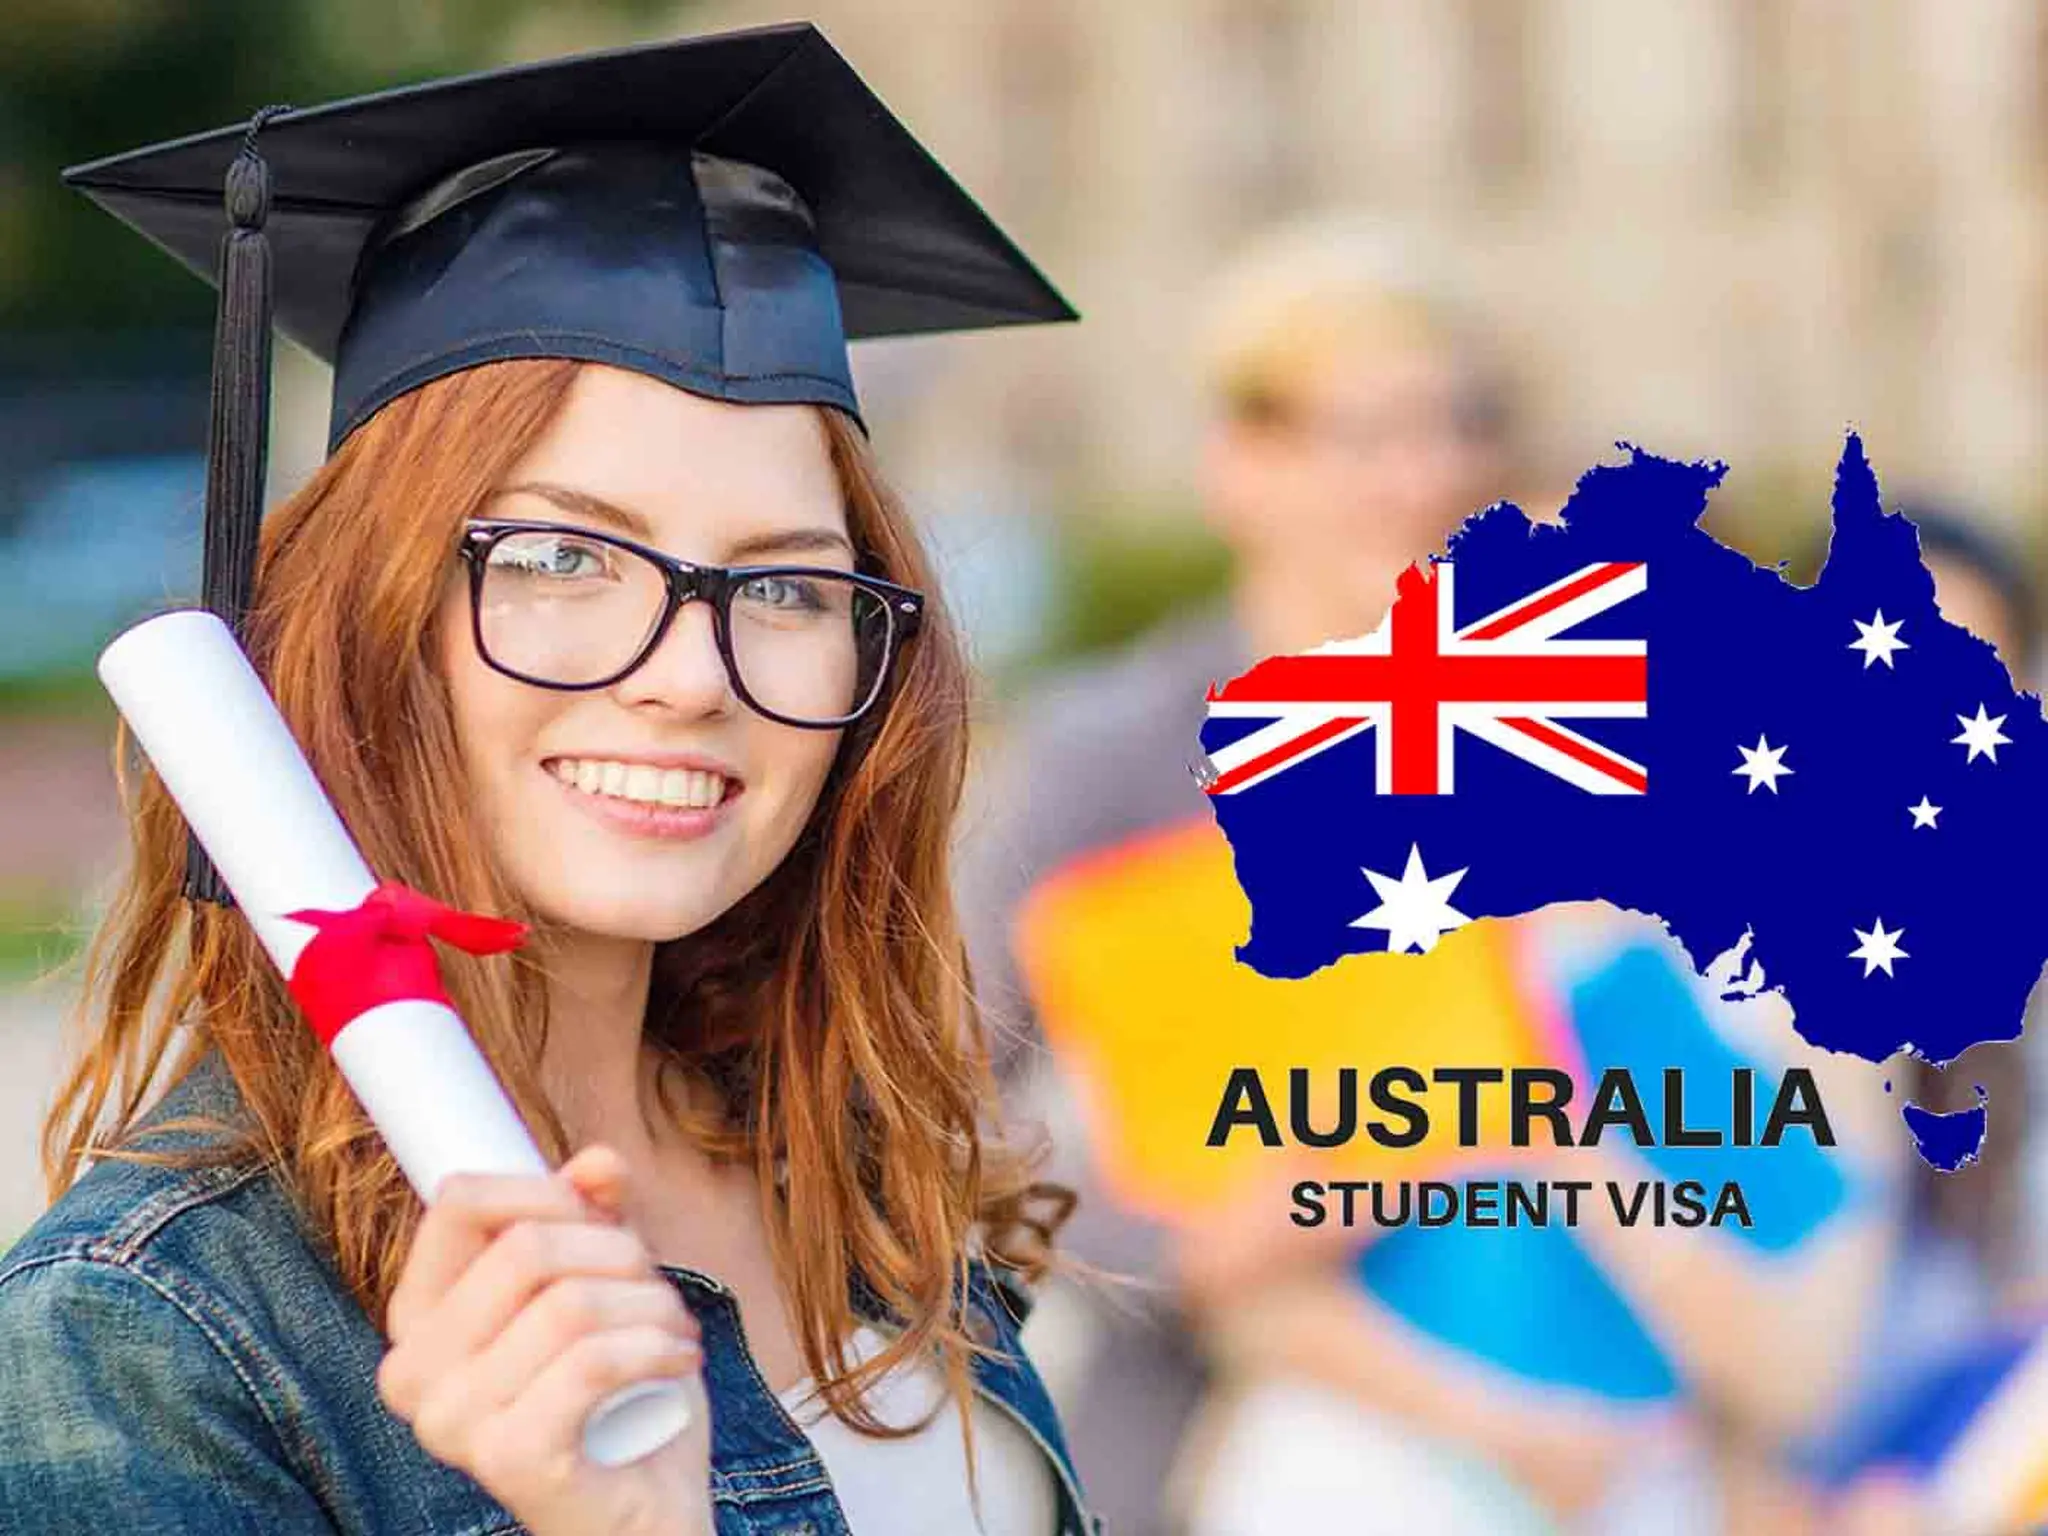 Australia announces urgent decisions on student visas amid concern about exclusion